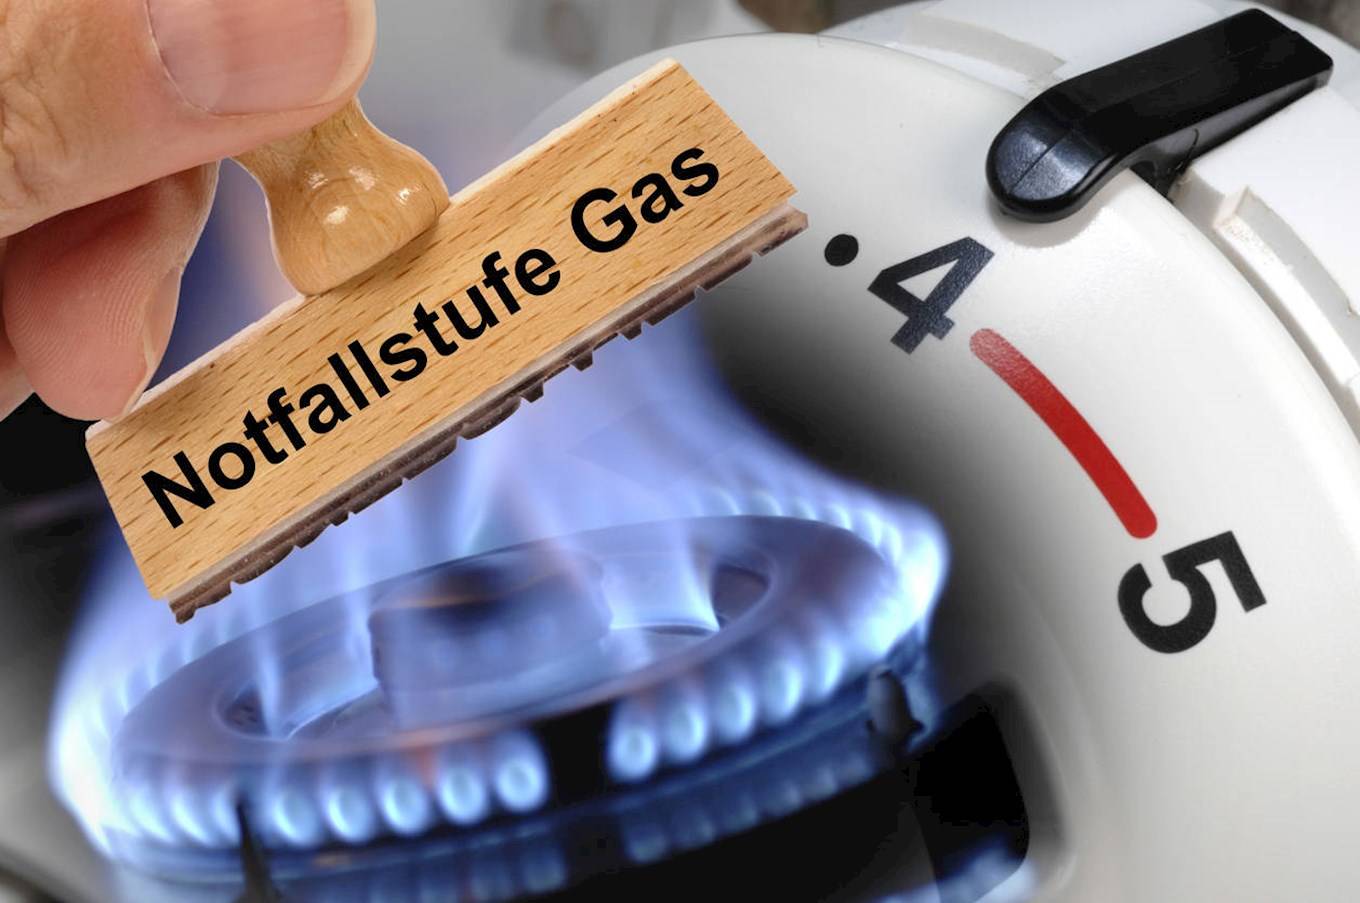 Notfallplan Gas